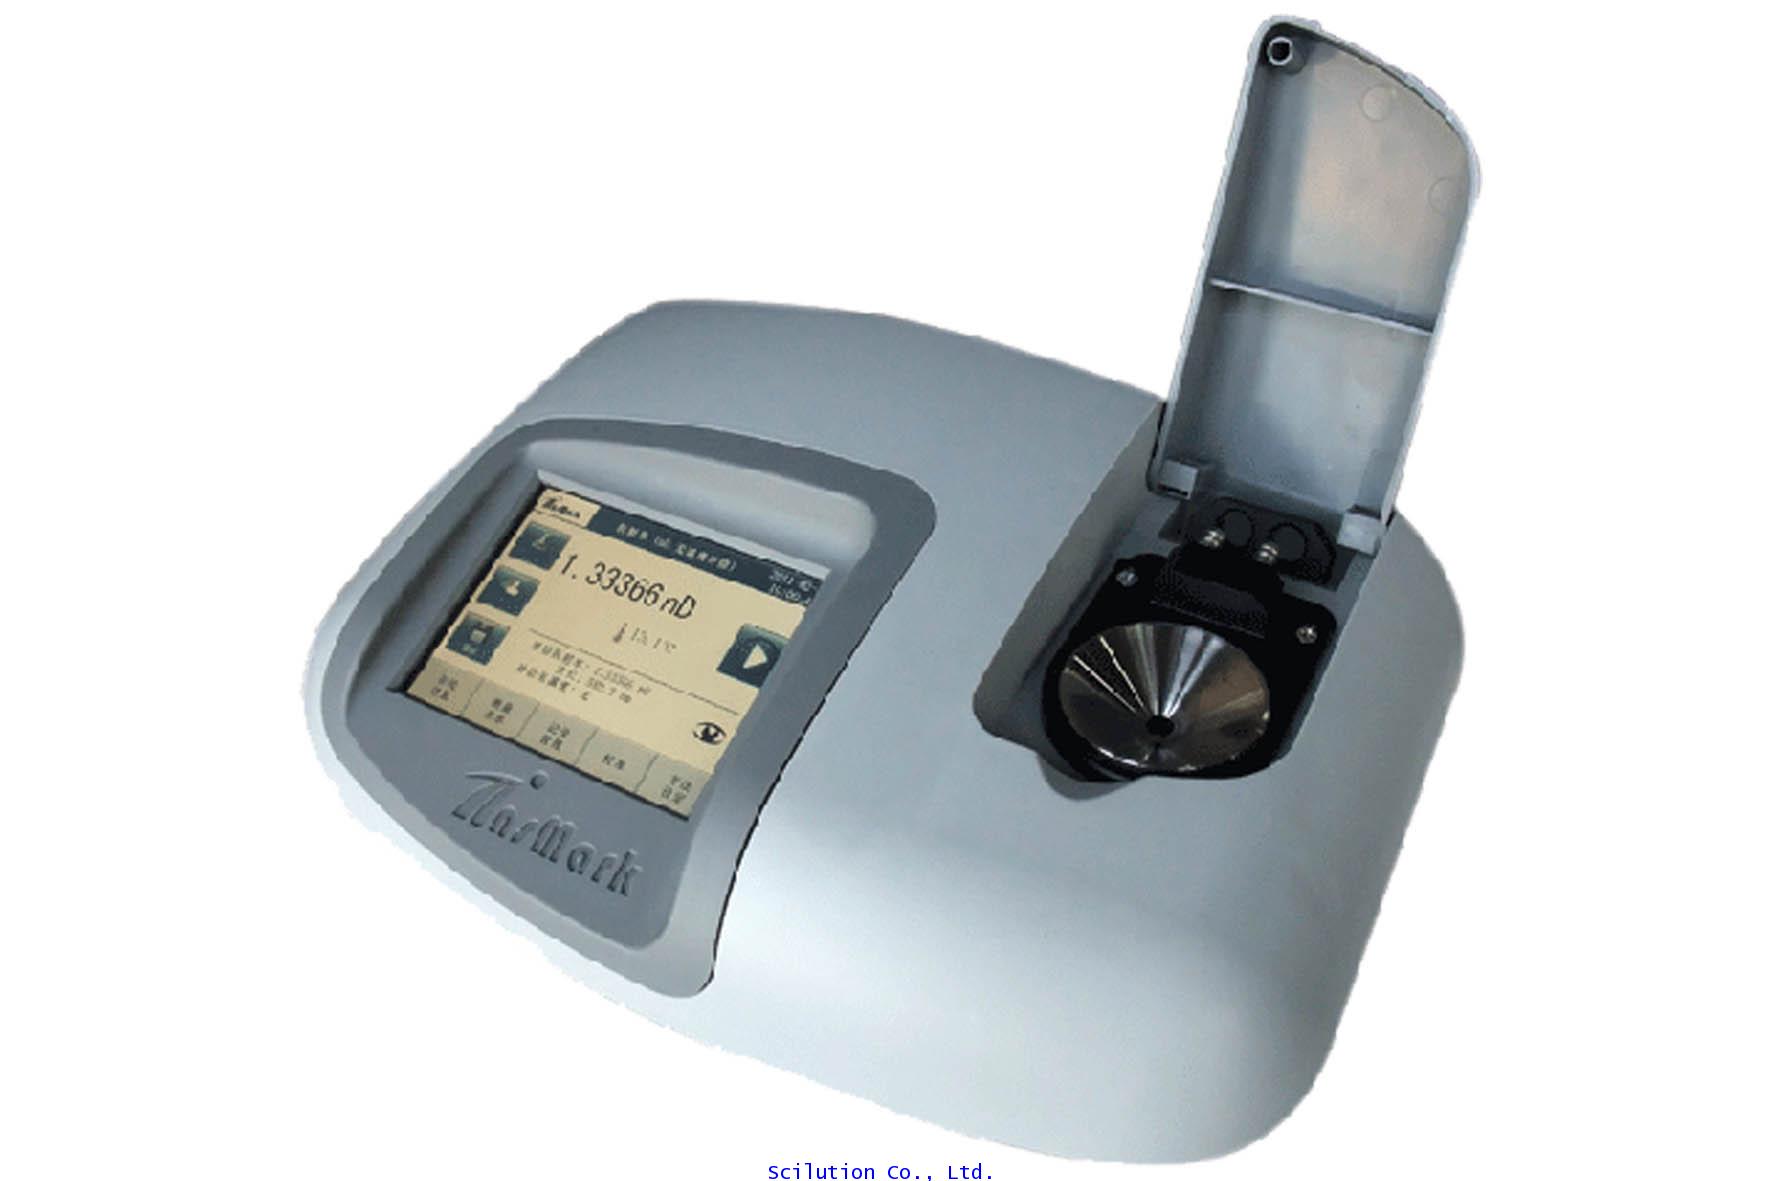 เครื่องวัดความหวาน Automatic Refractometer รุ่น IR series E